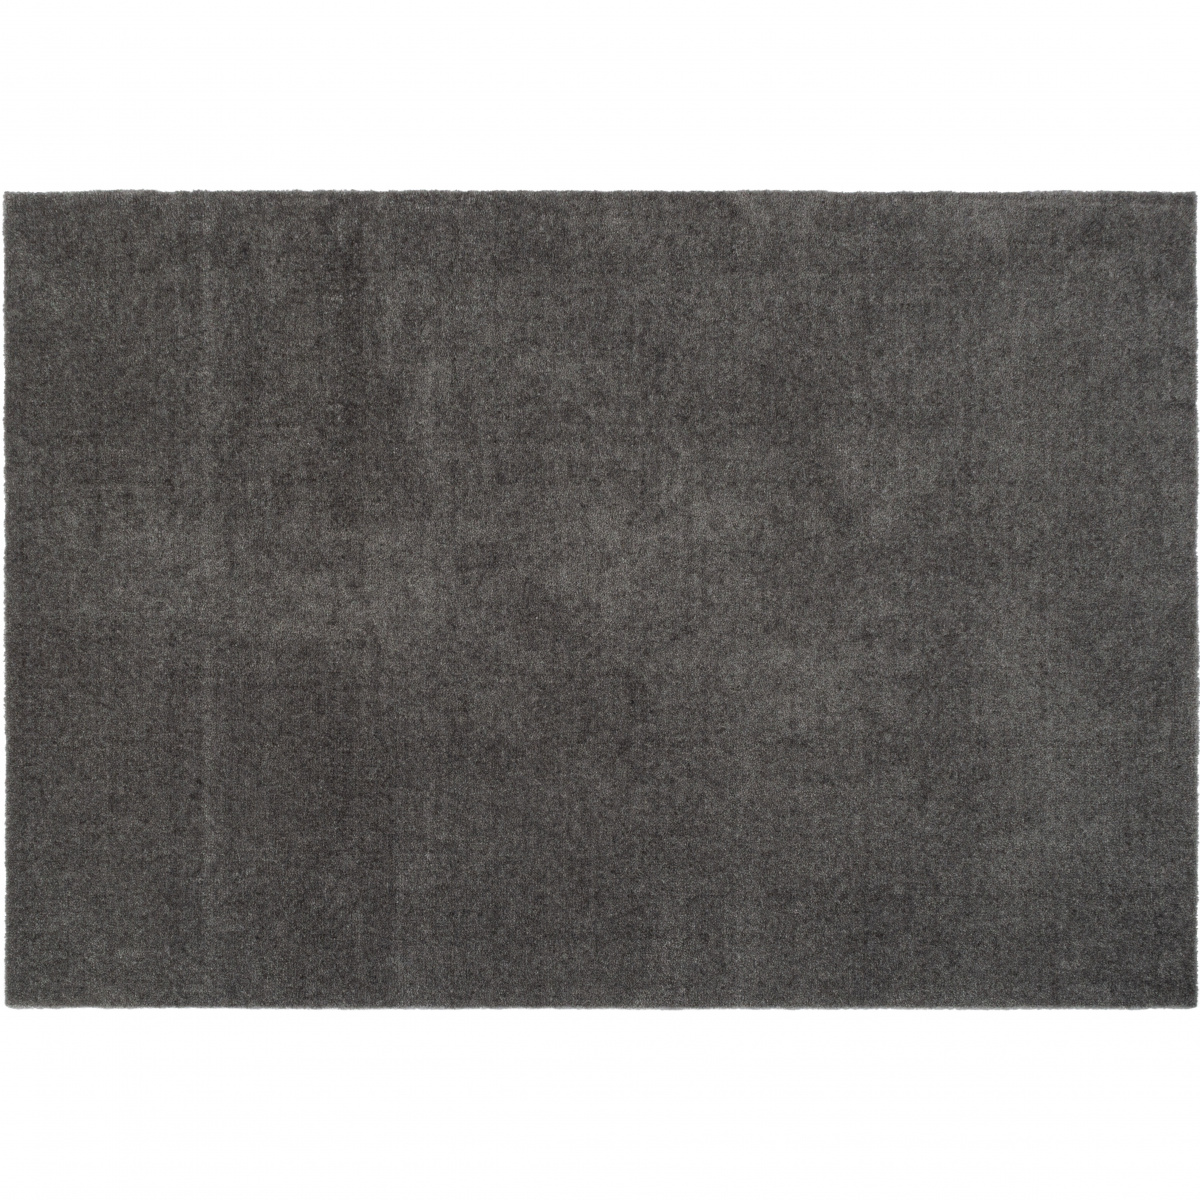 Tica door mat, gray - 90x130